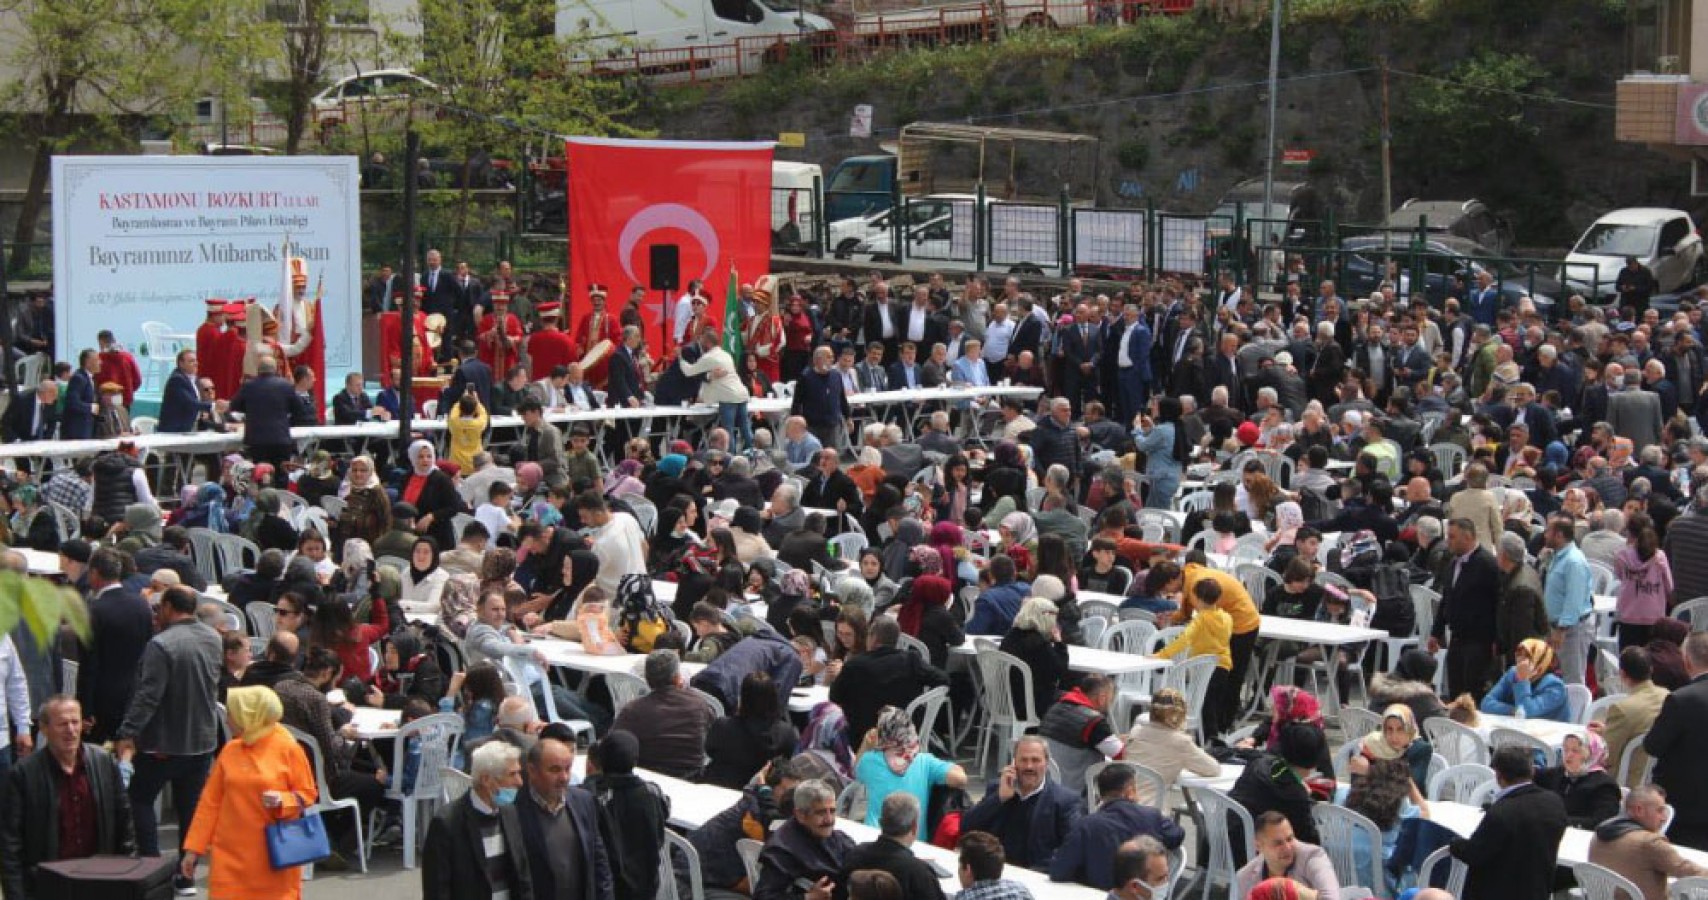 İstanbul'da 130 yıllık Kastamonu geleneği